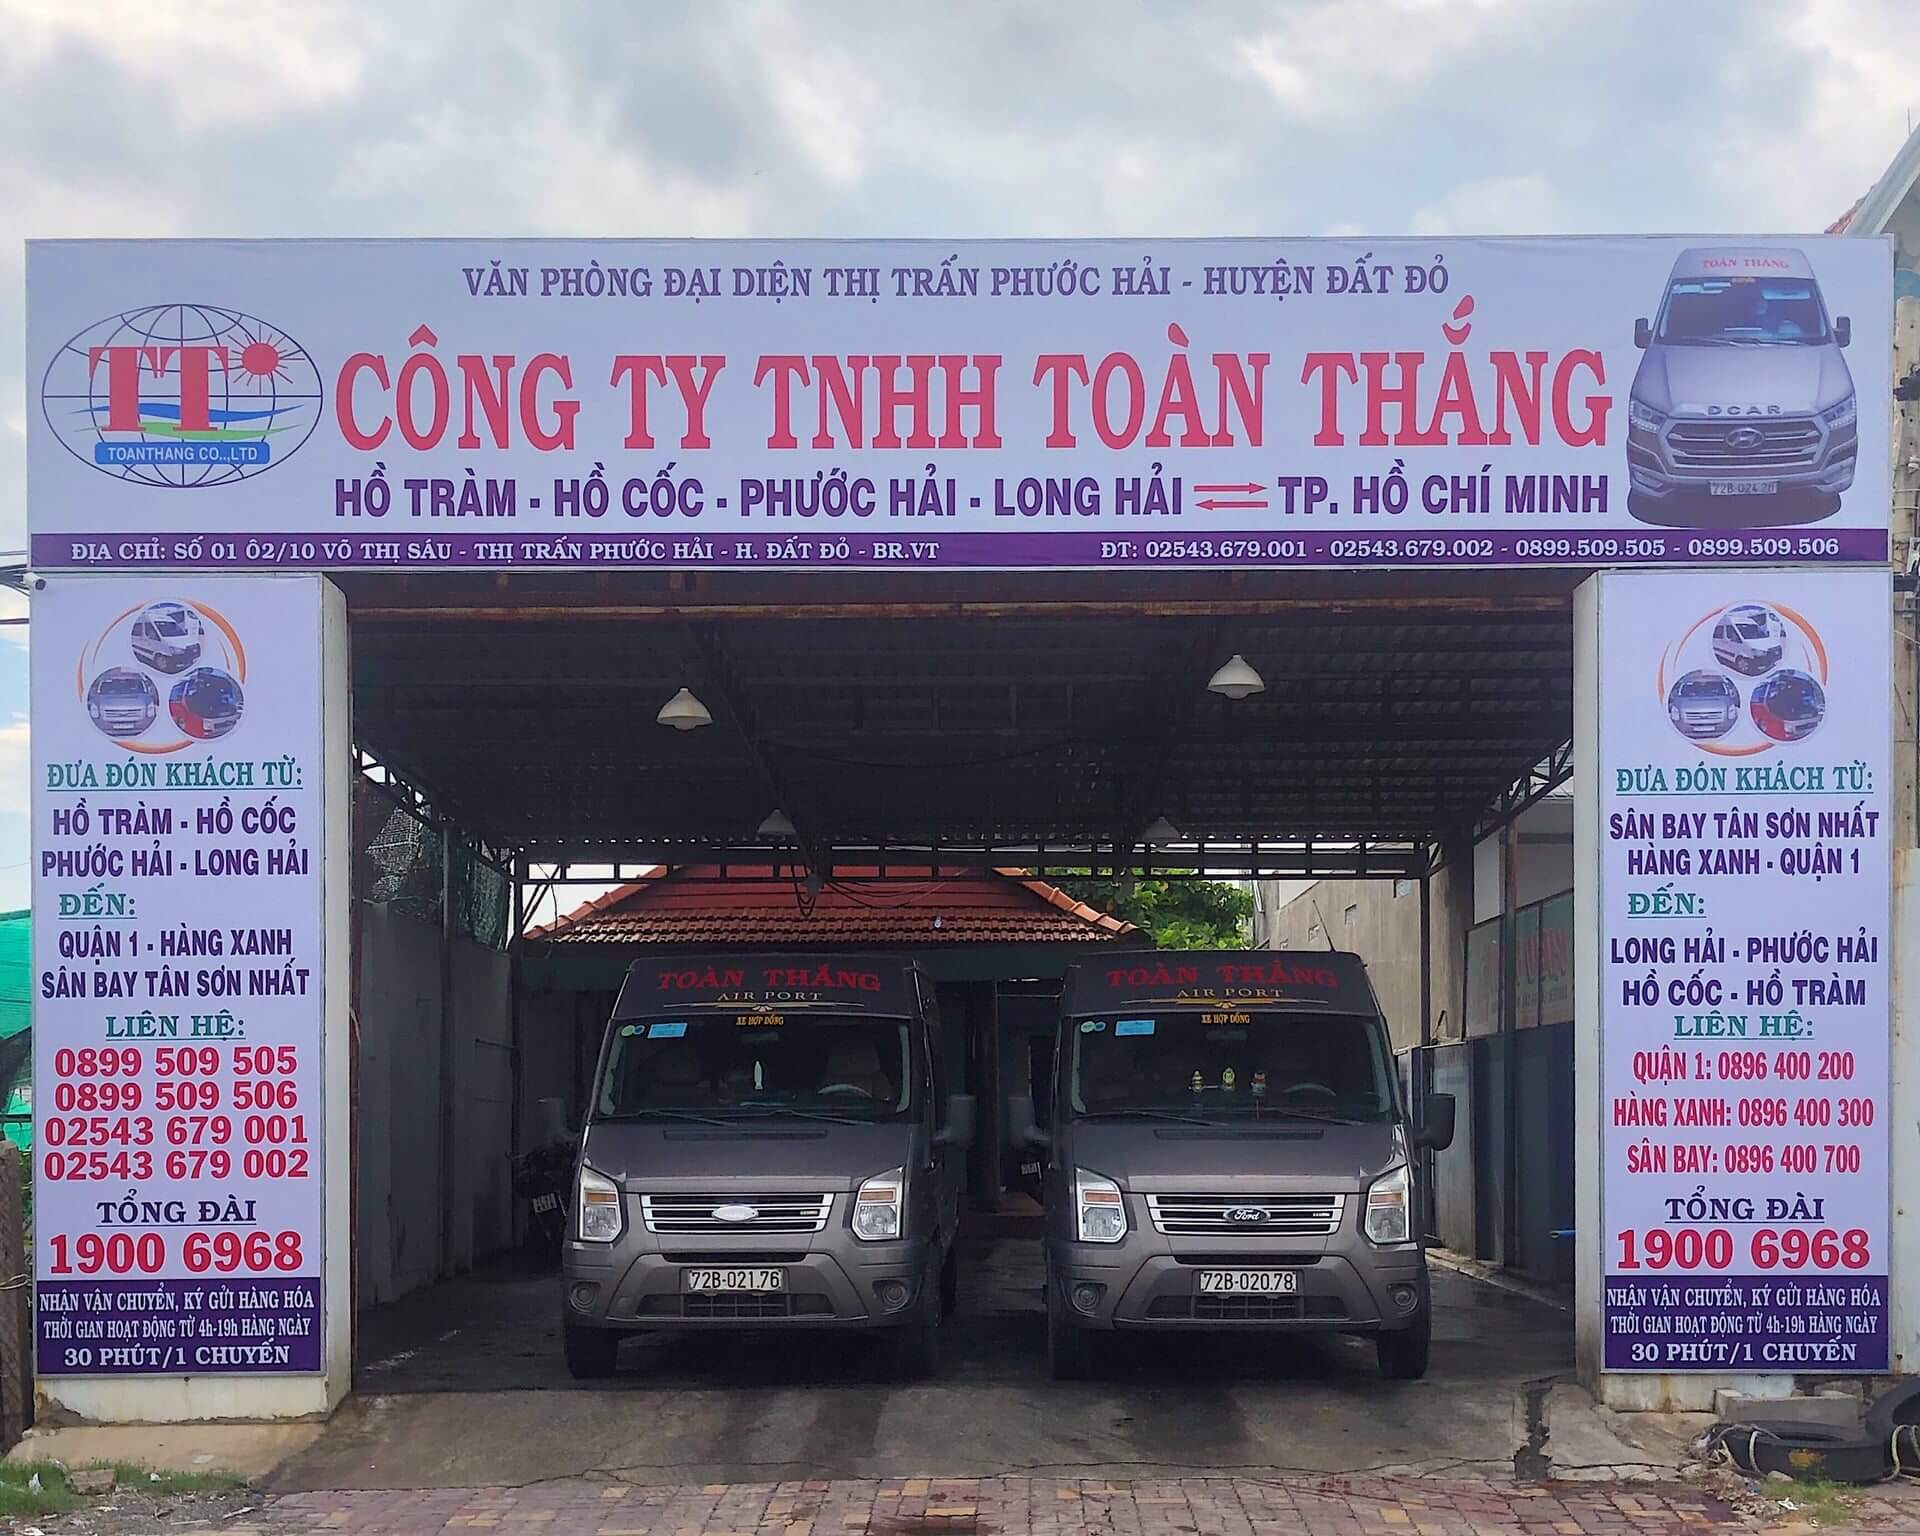 Nhà xe Toàn Thắng - Cung cấp xe limousine đi Vũng Tàu